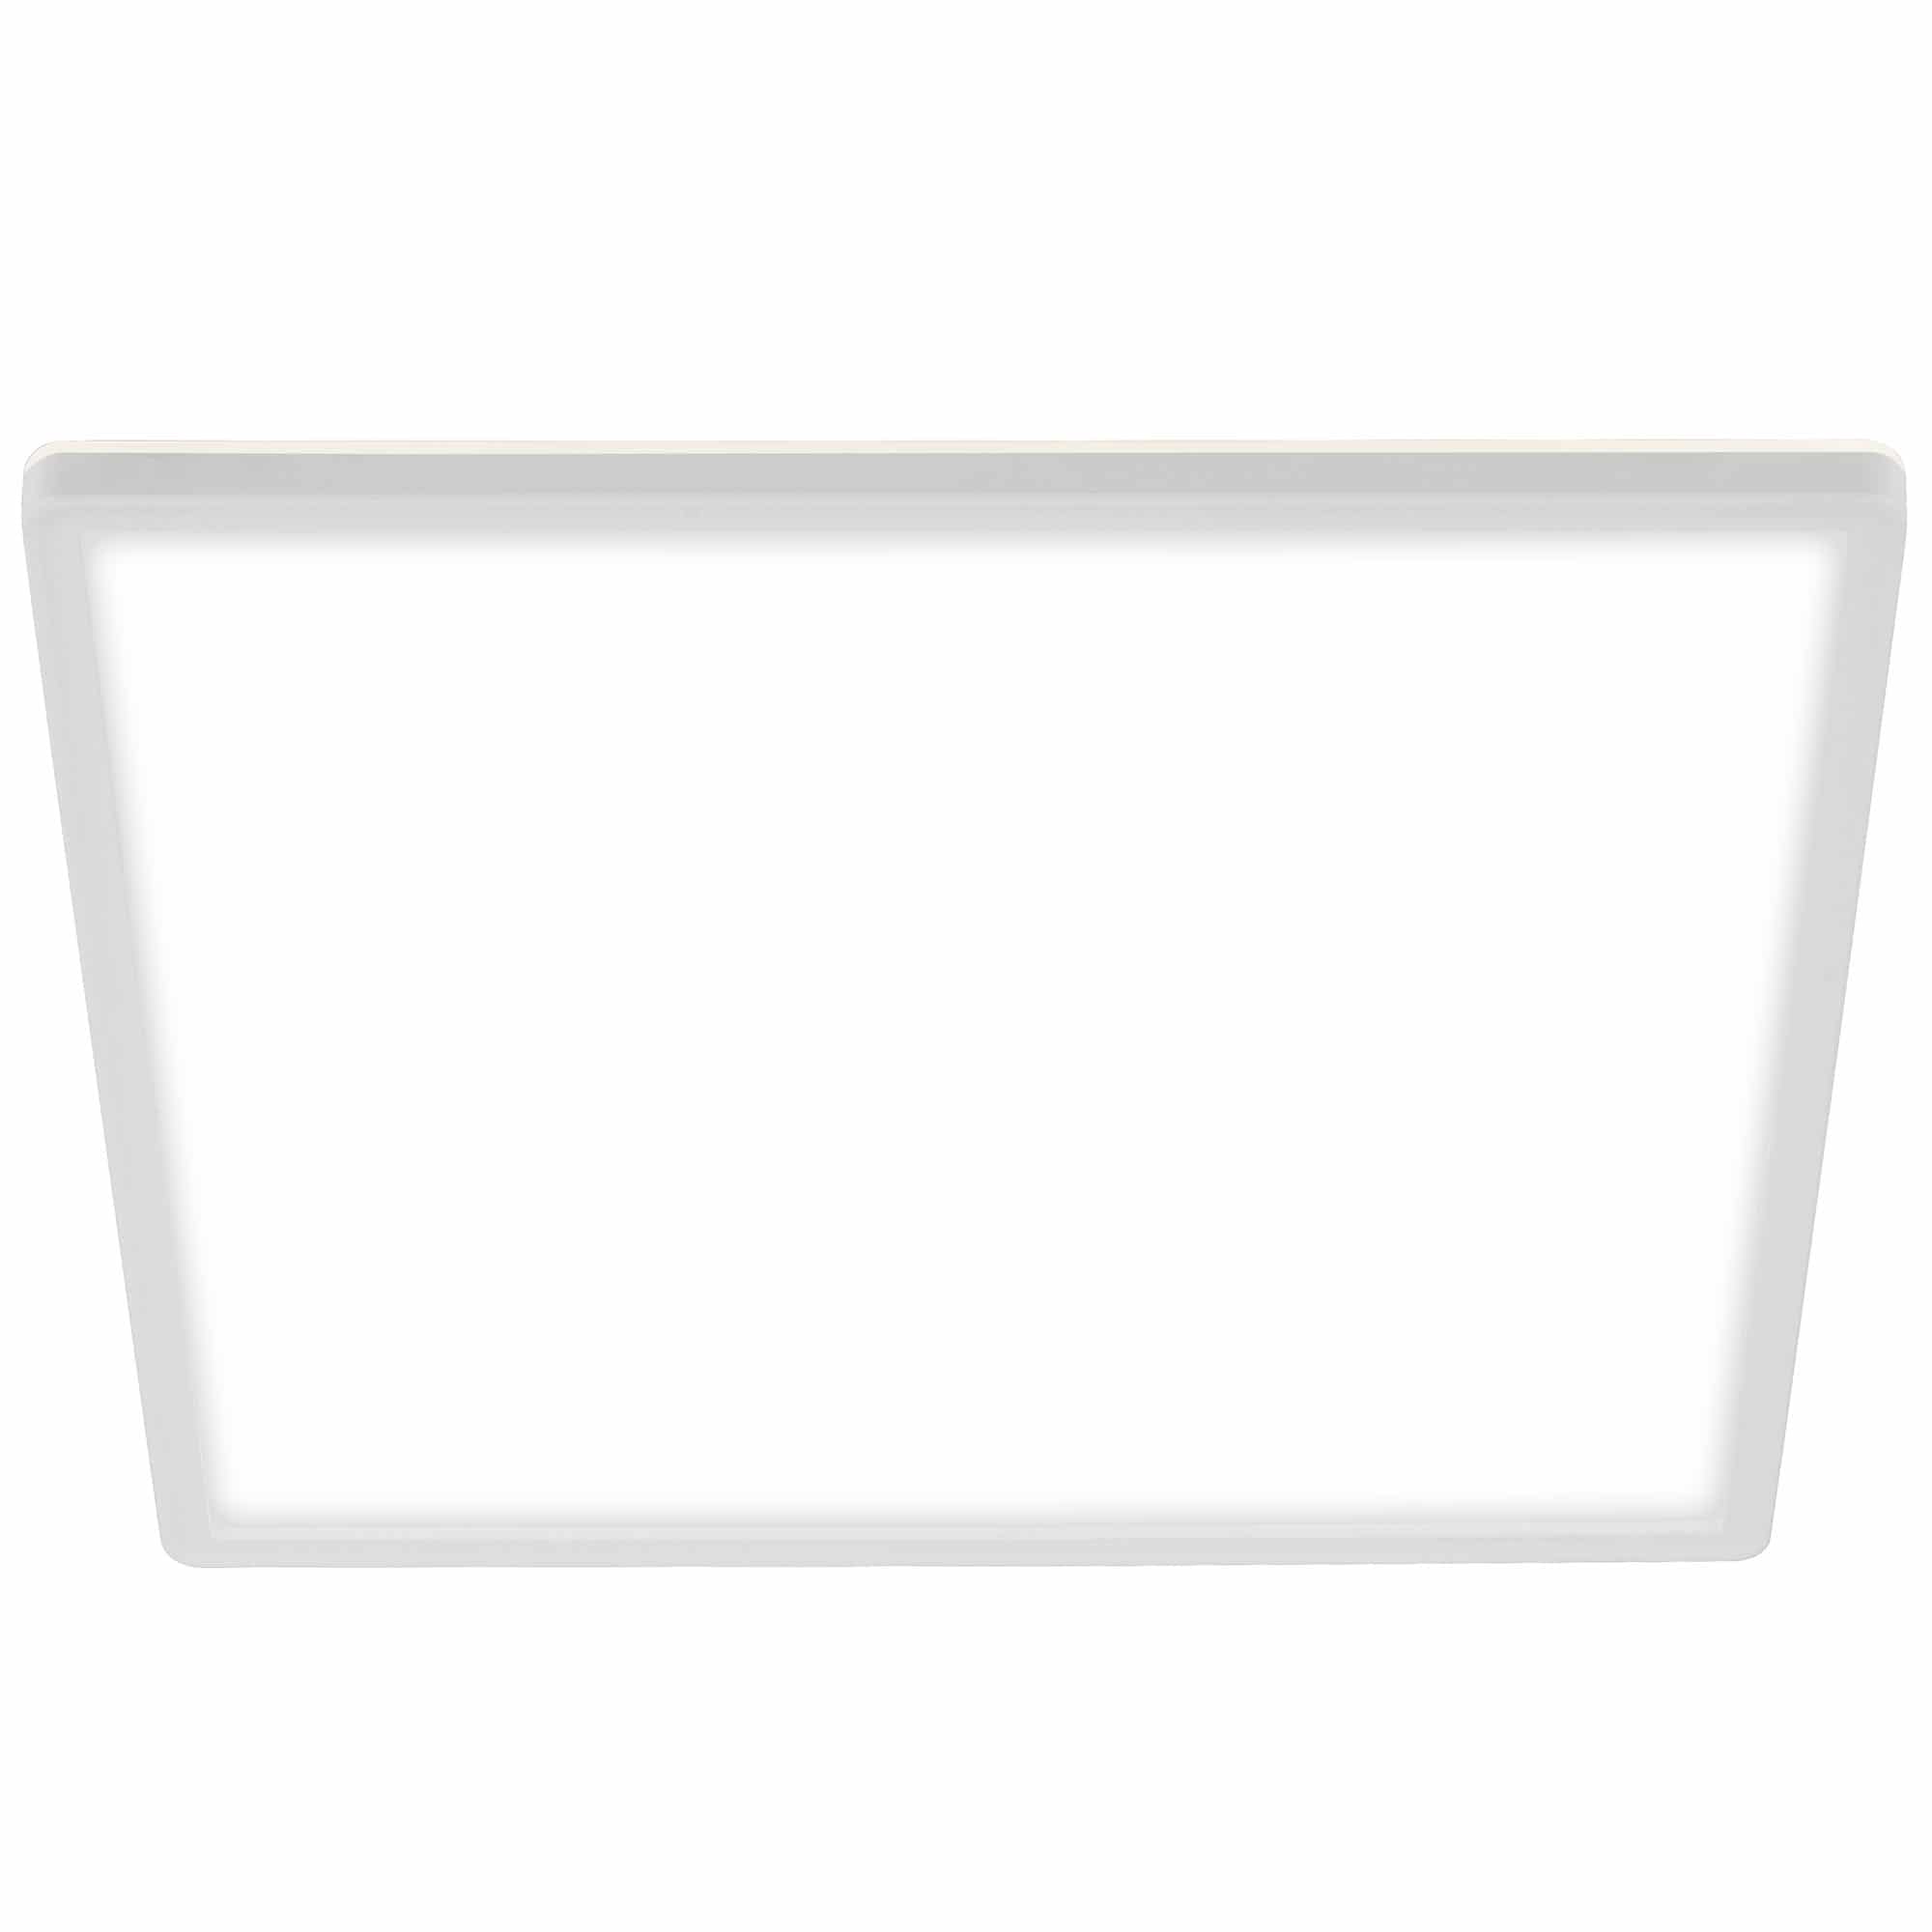 Briloner Slim LED Deckenleuchte, Backlight, Flach, Eckig, 29,3x29,3cm, Weiß